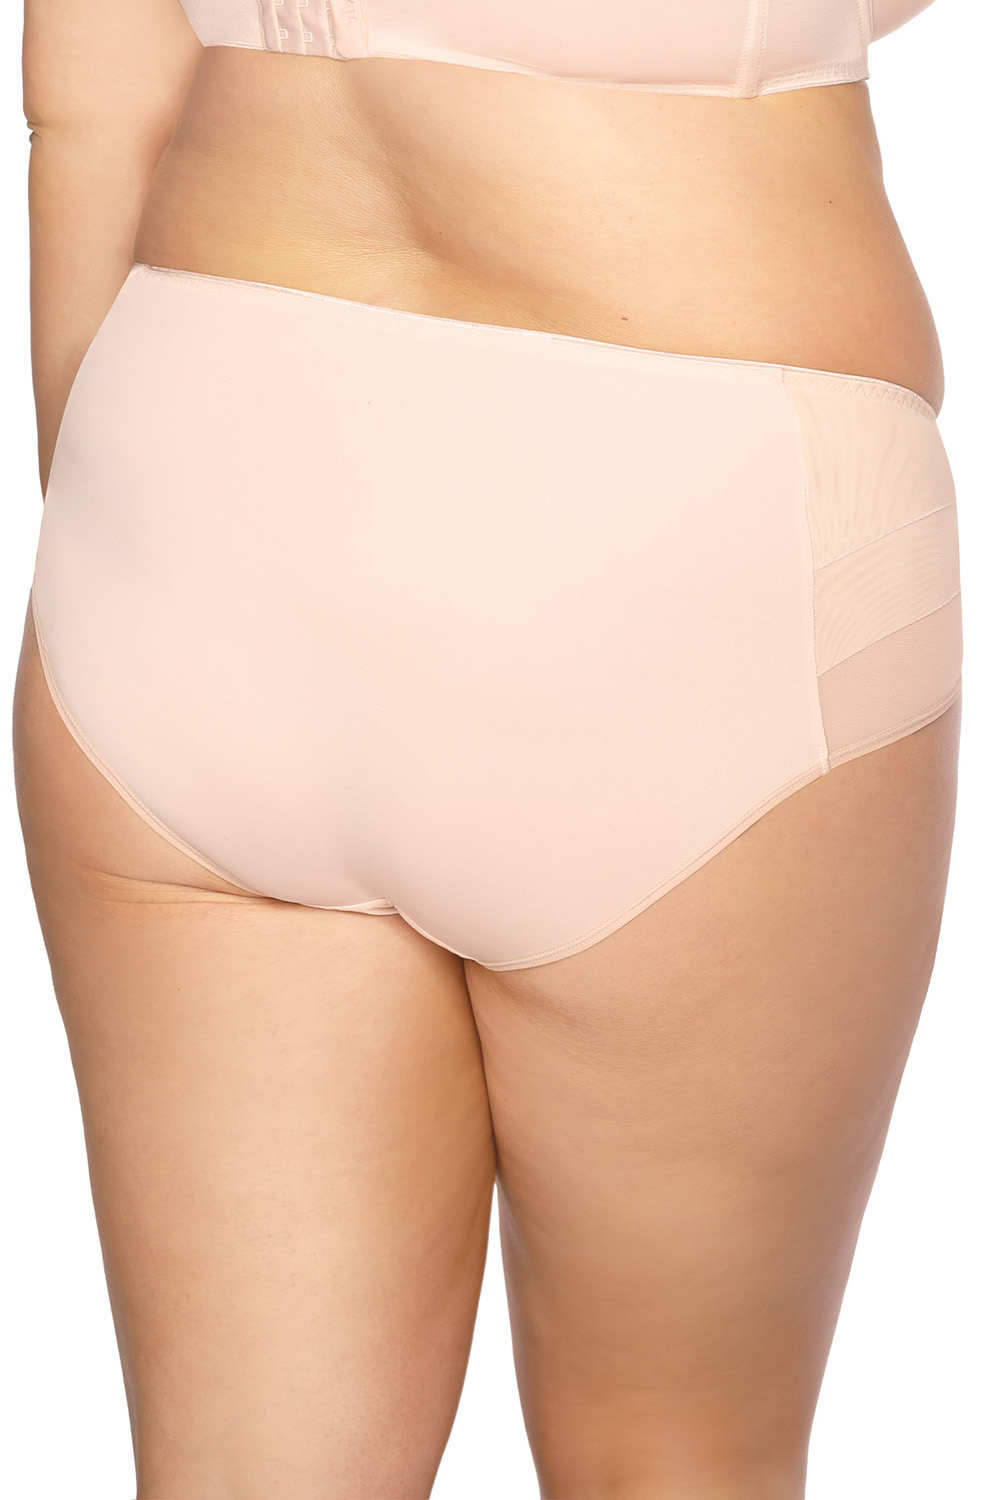 Panties model 139932 Gaia beige Ladies